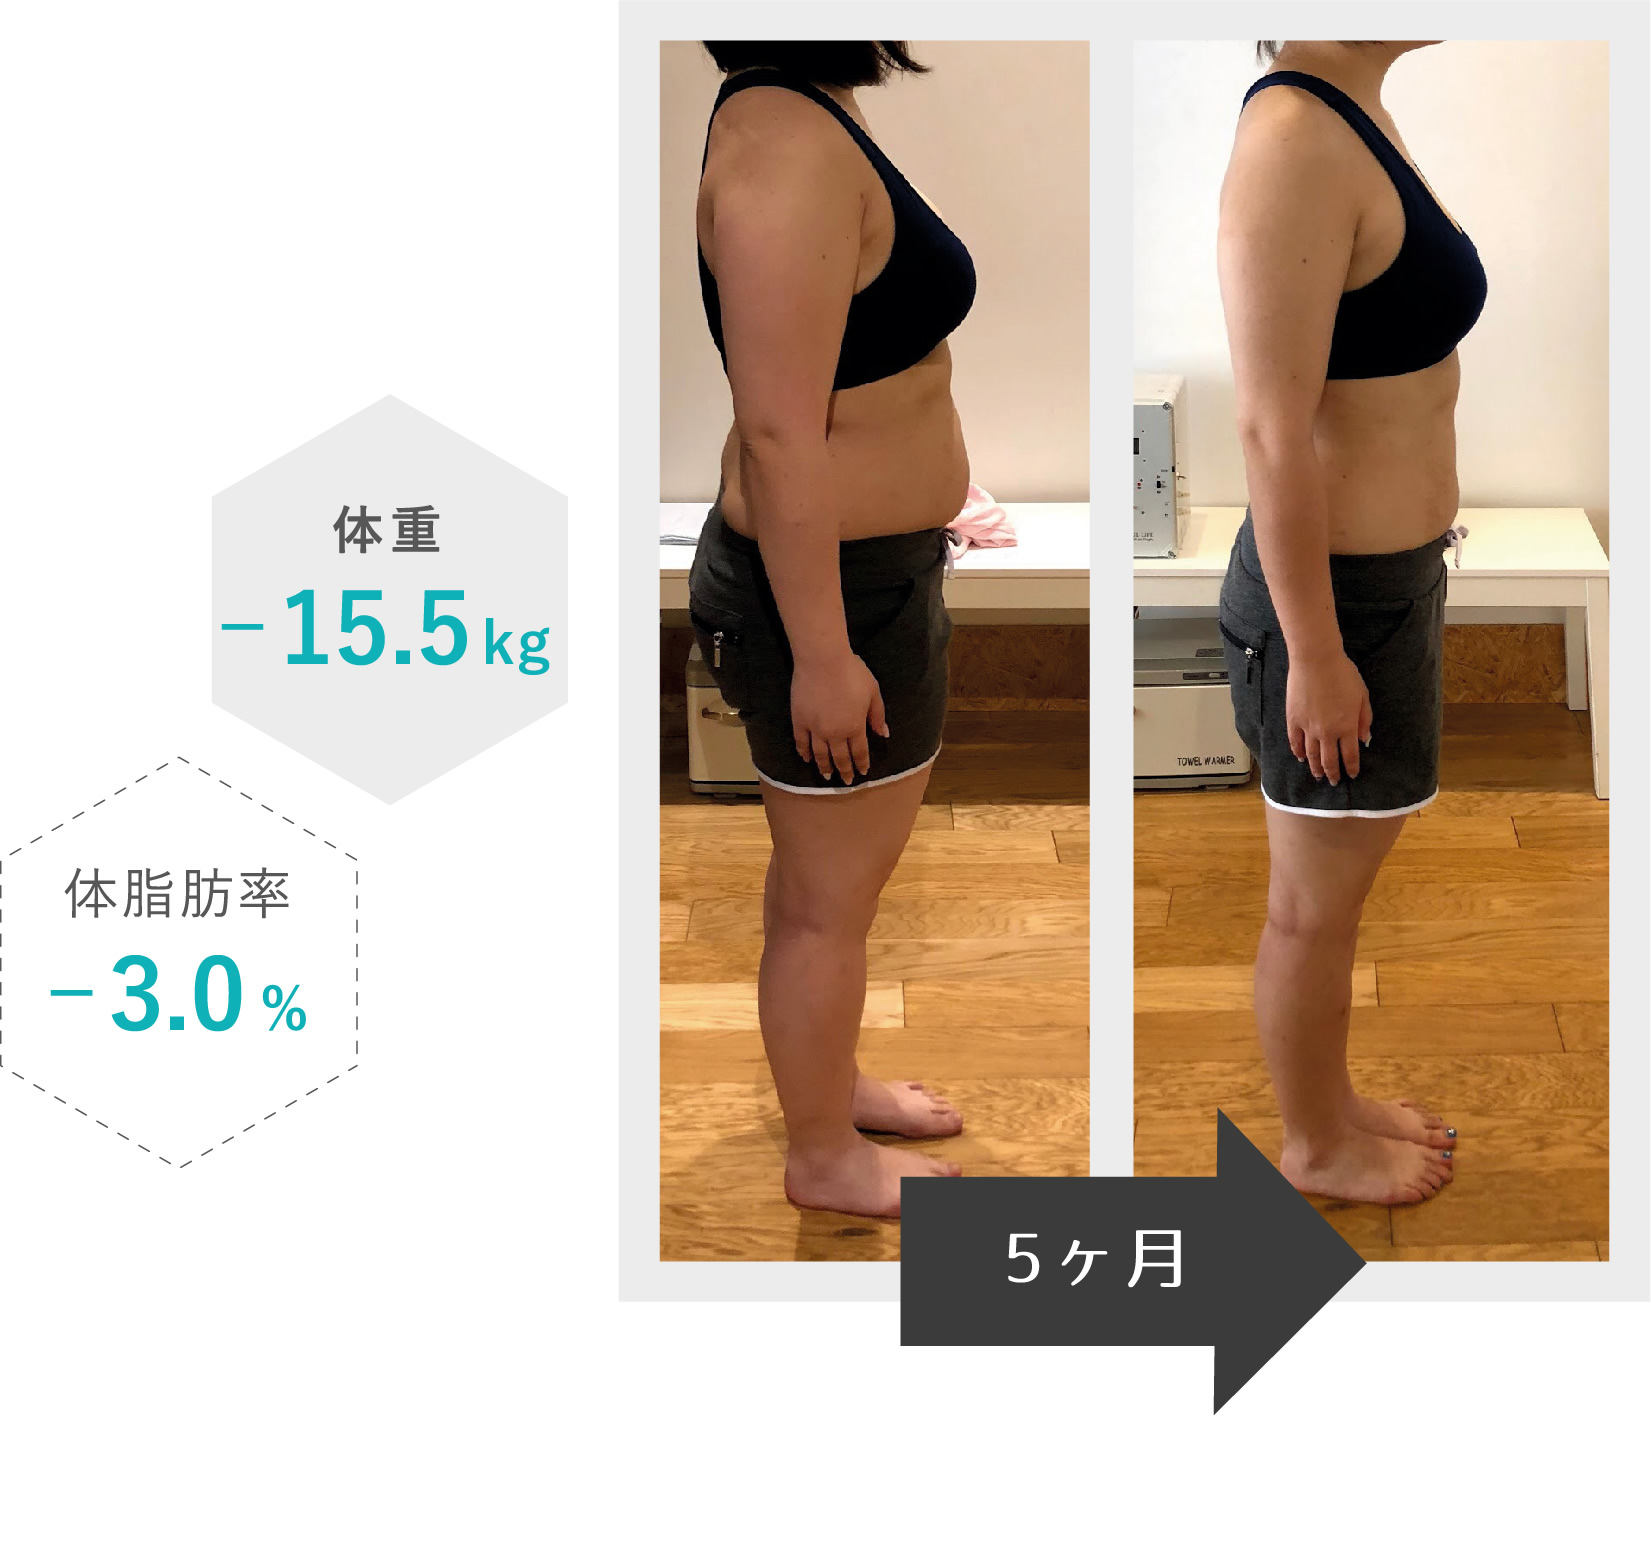 5ヶ月で体重-15.5kg、体脂肪率-3.0%を達成した女性モデル